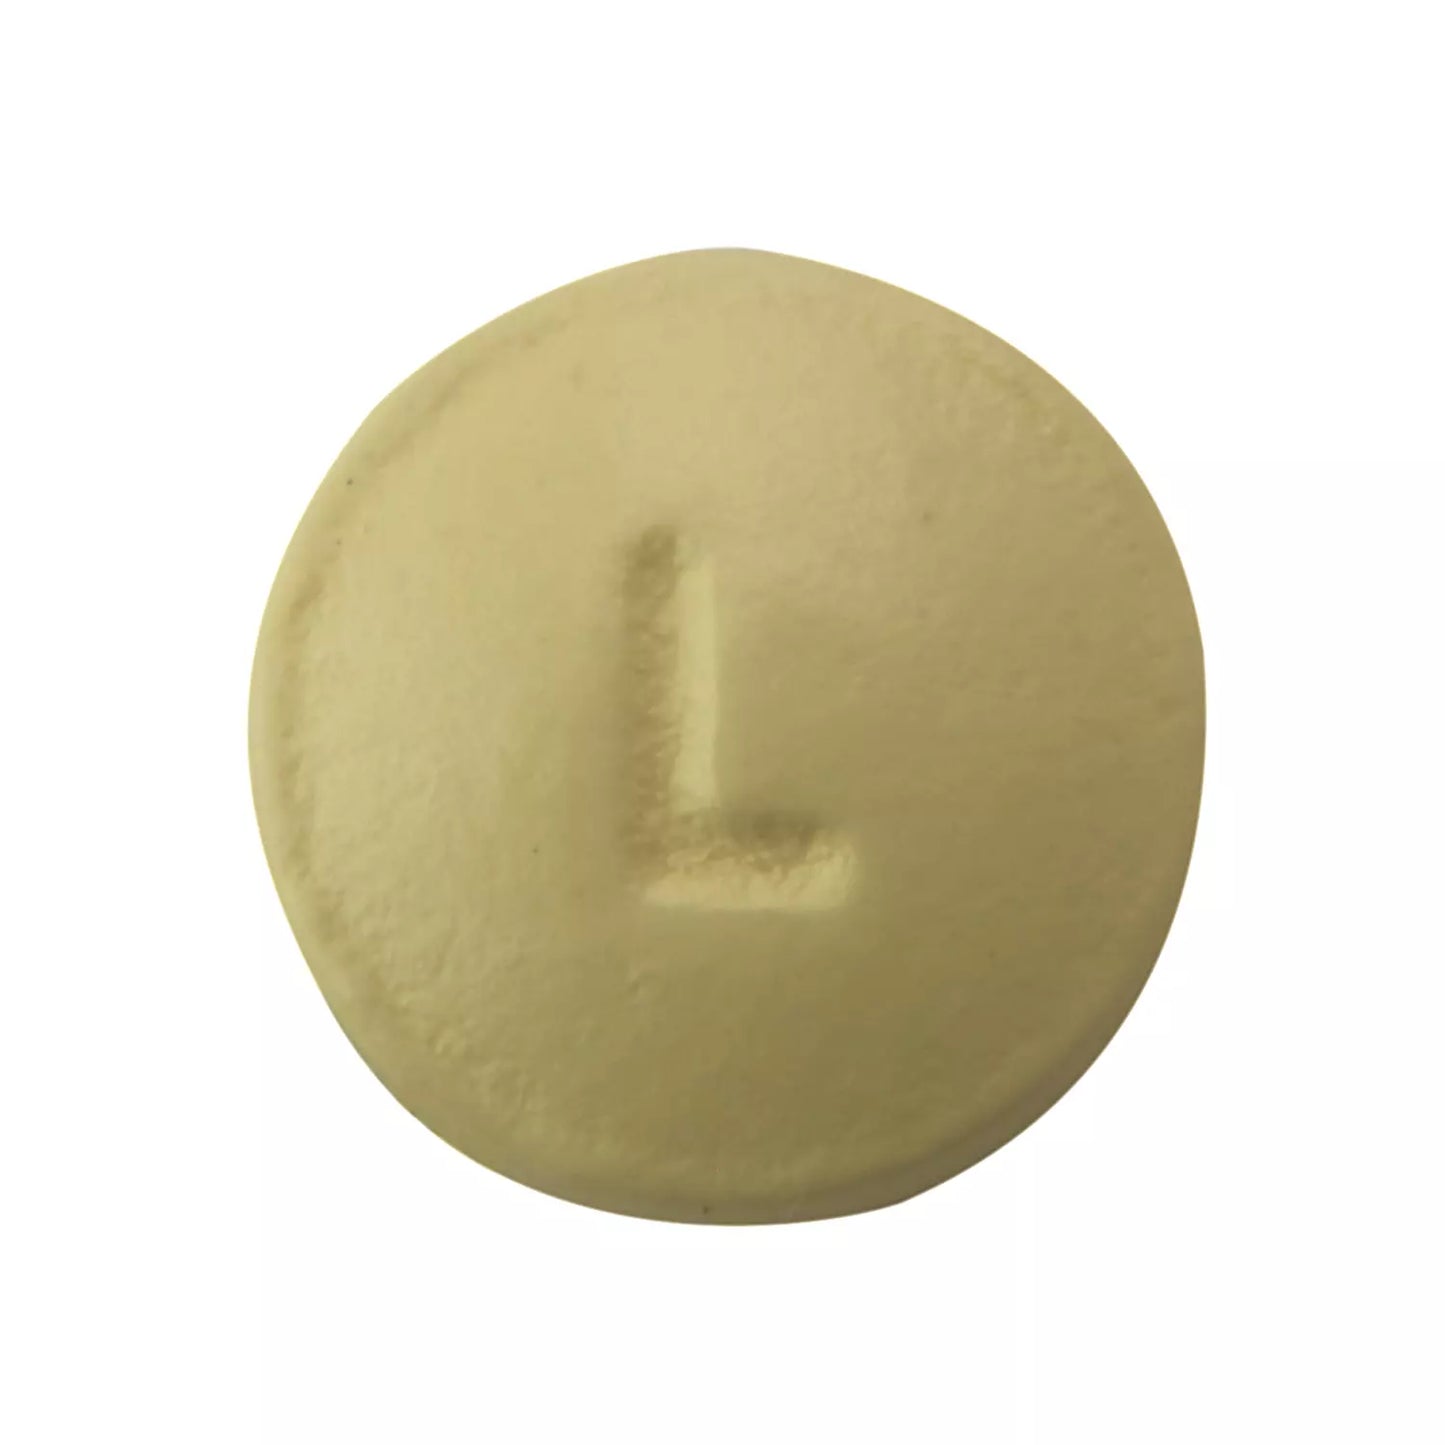 Member's Mark 81mg Low Strength Aspirin (2 bottles of 365 tablets each)